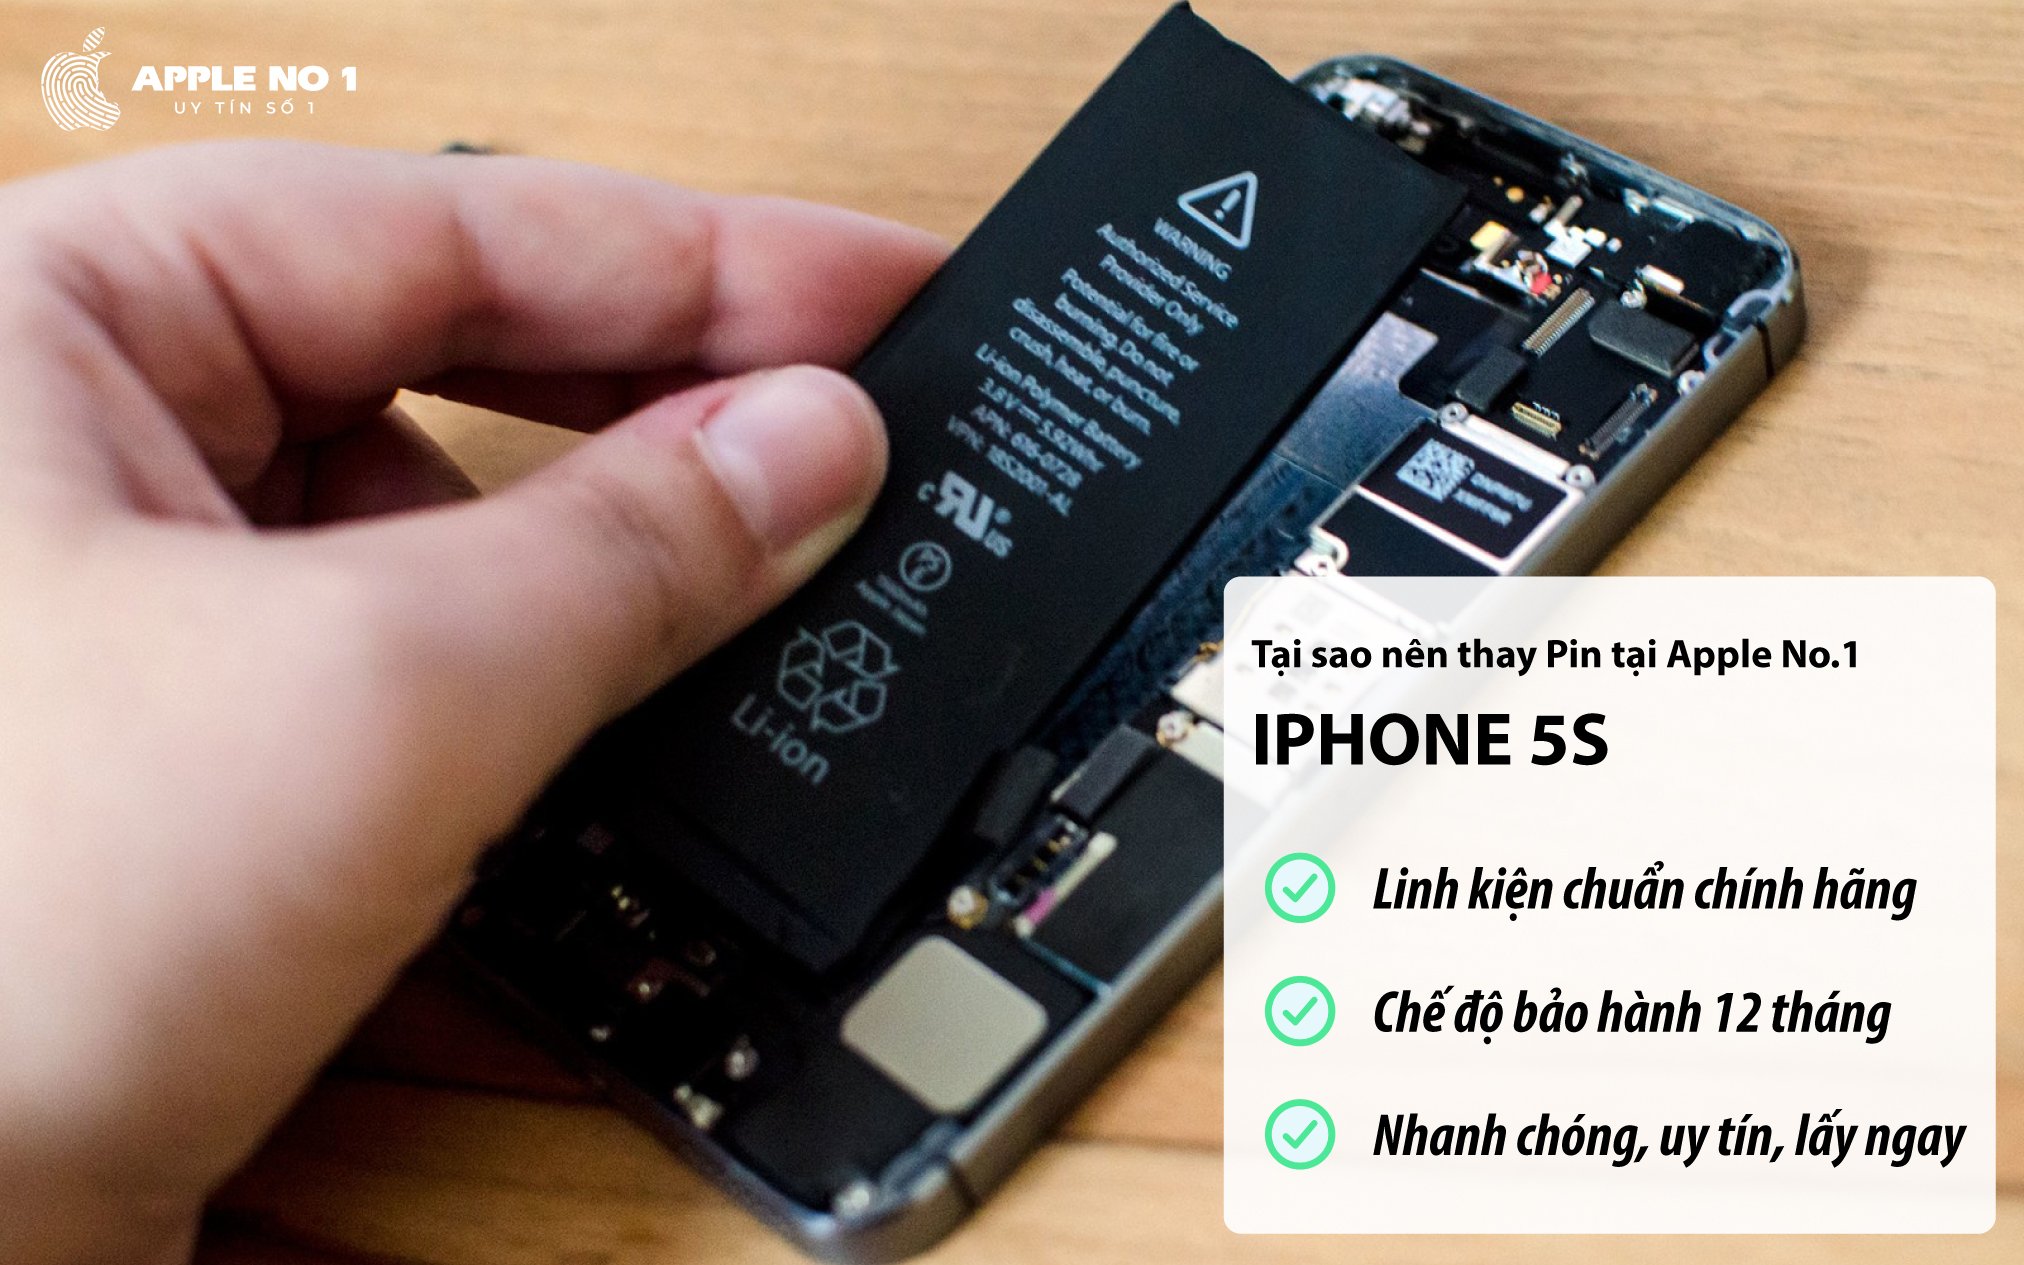 Dịch vụ thay pin iPhone 5s giá rẻ, lấy ngay tại Apple No.1